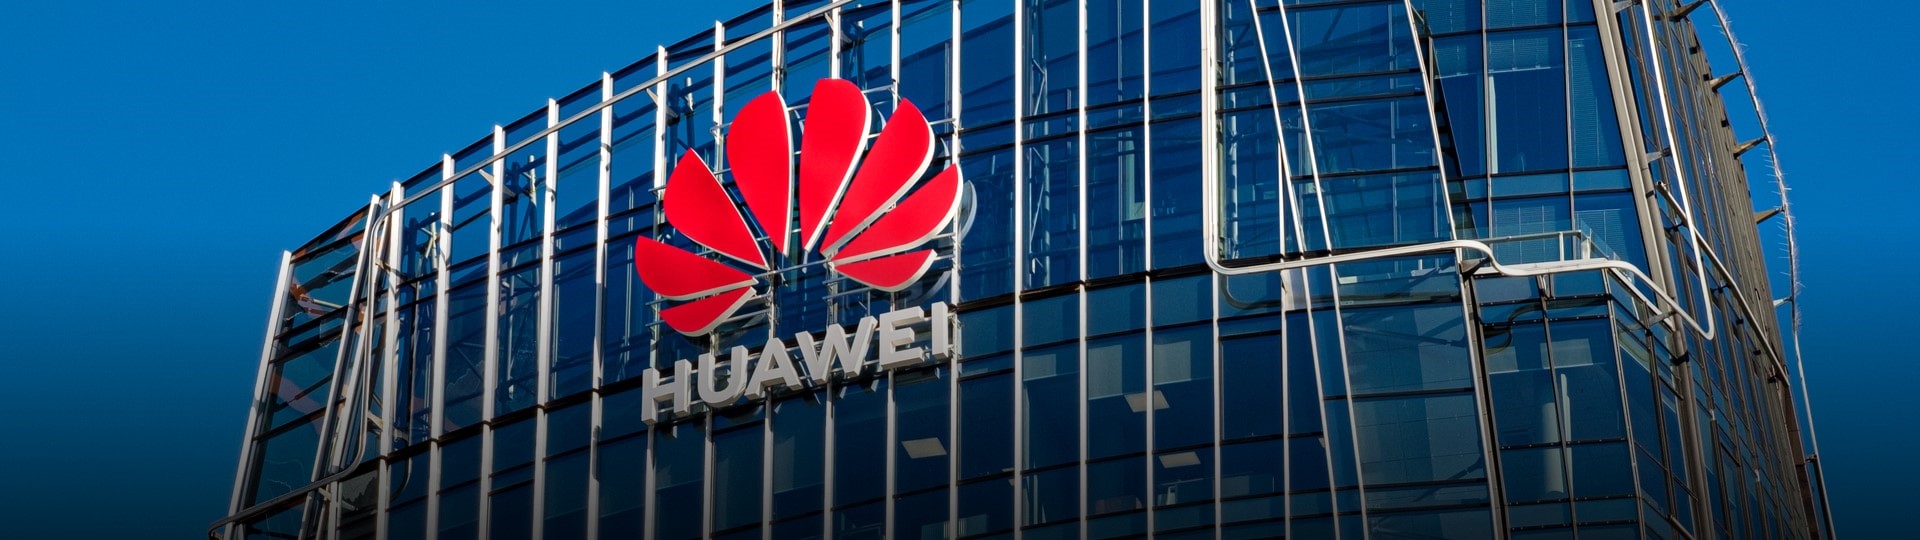 Huawei chce navzdory sankcím USA znovu být lídrem v oblasti chytrých telefonů